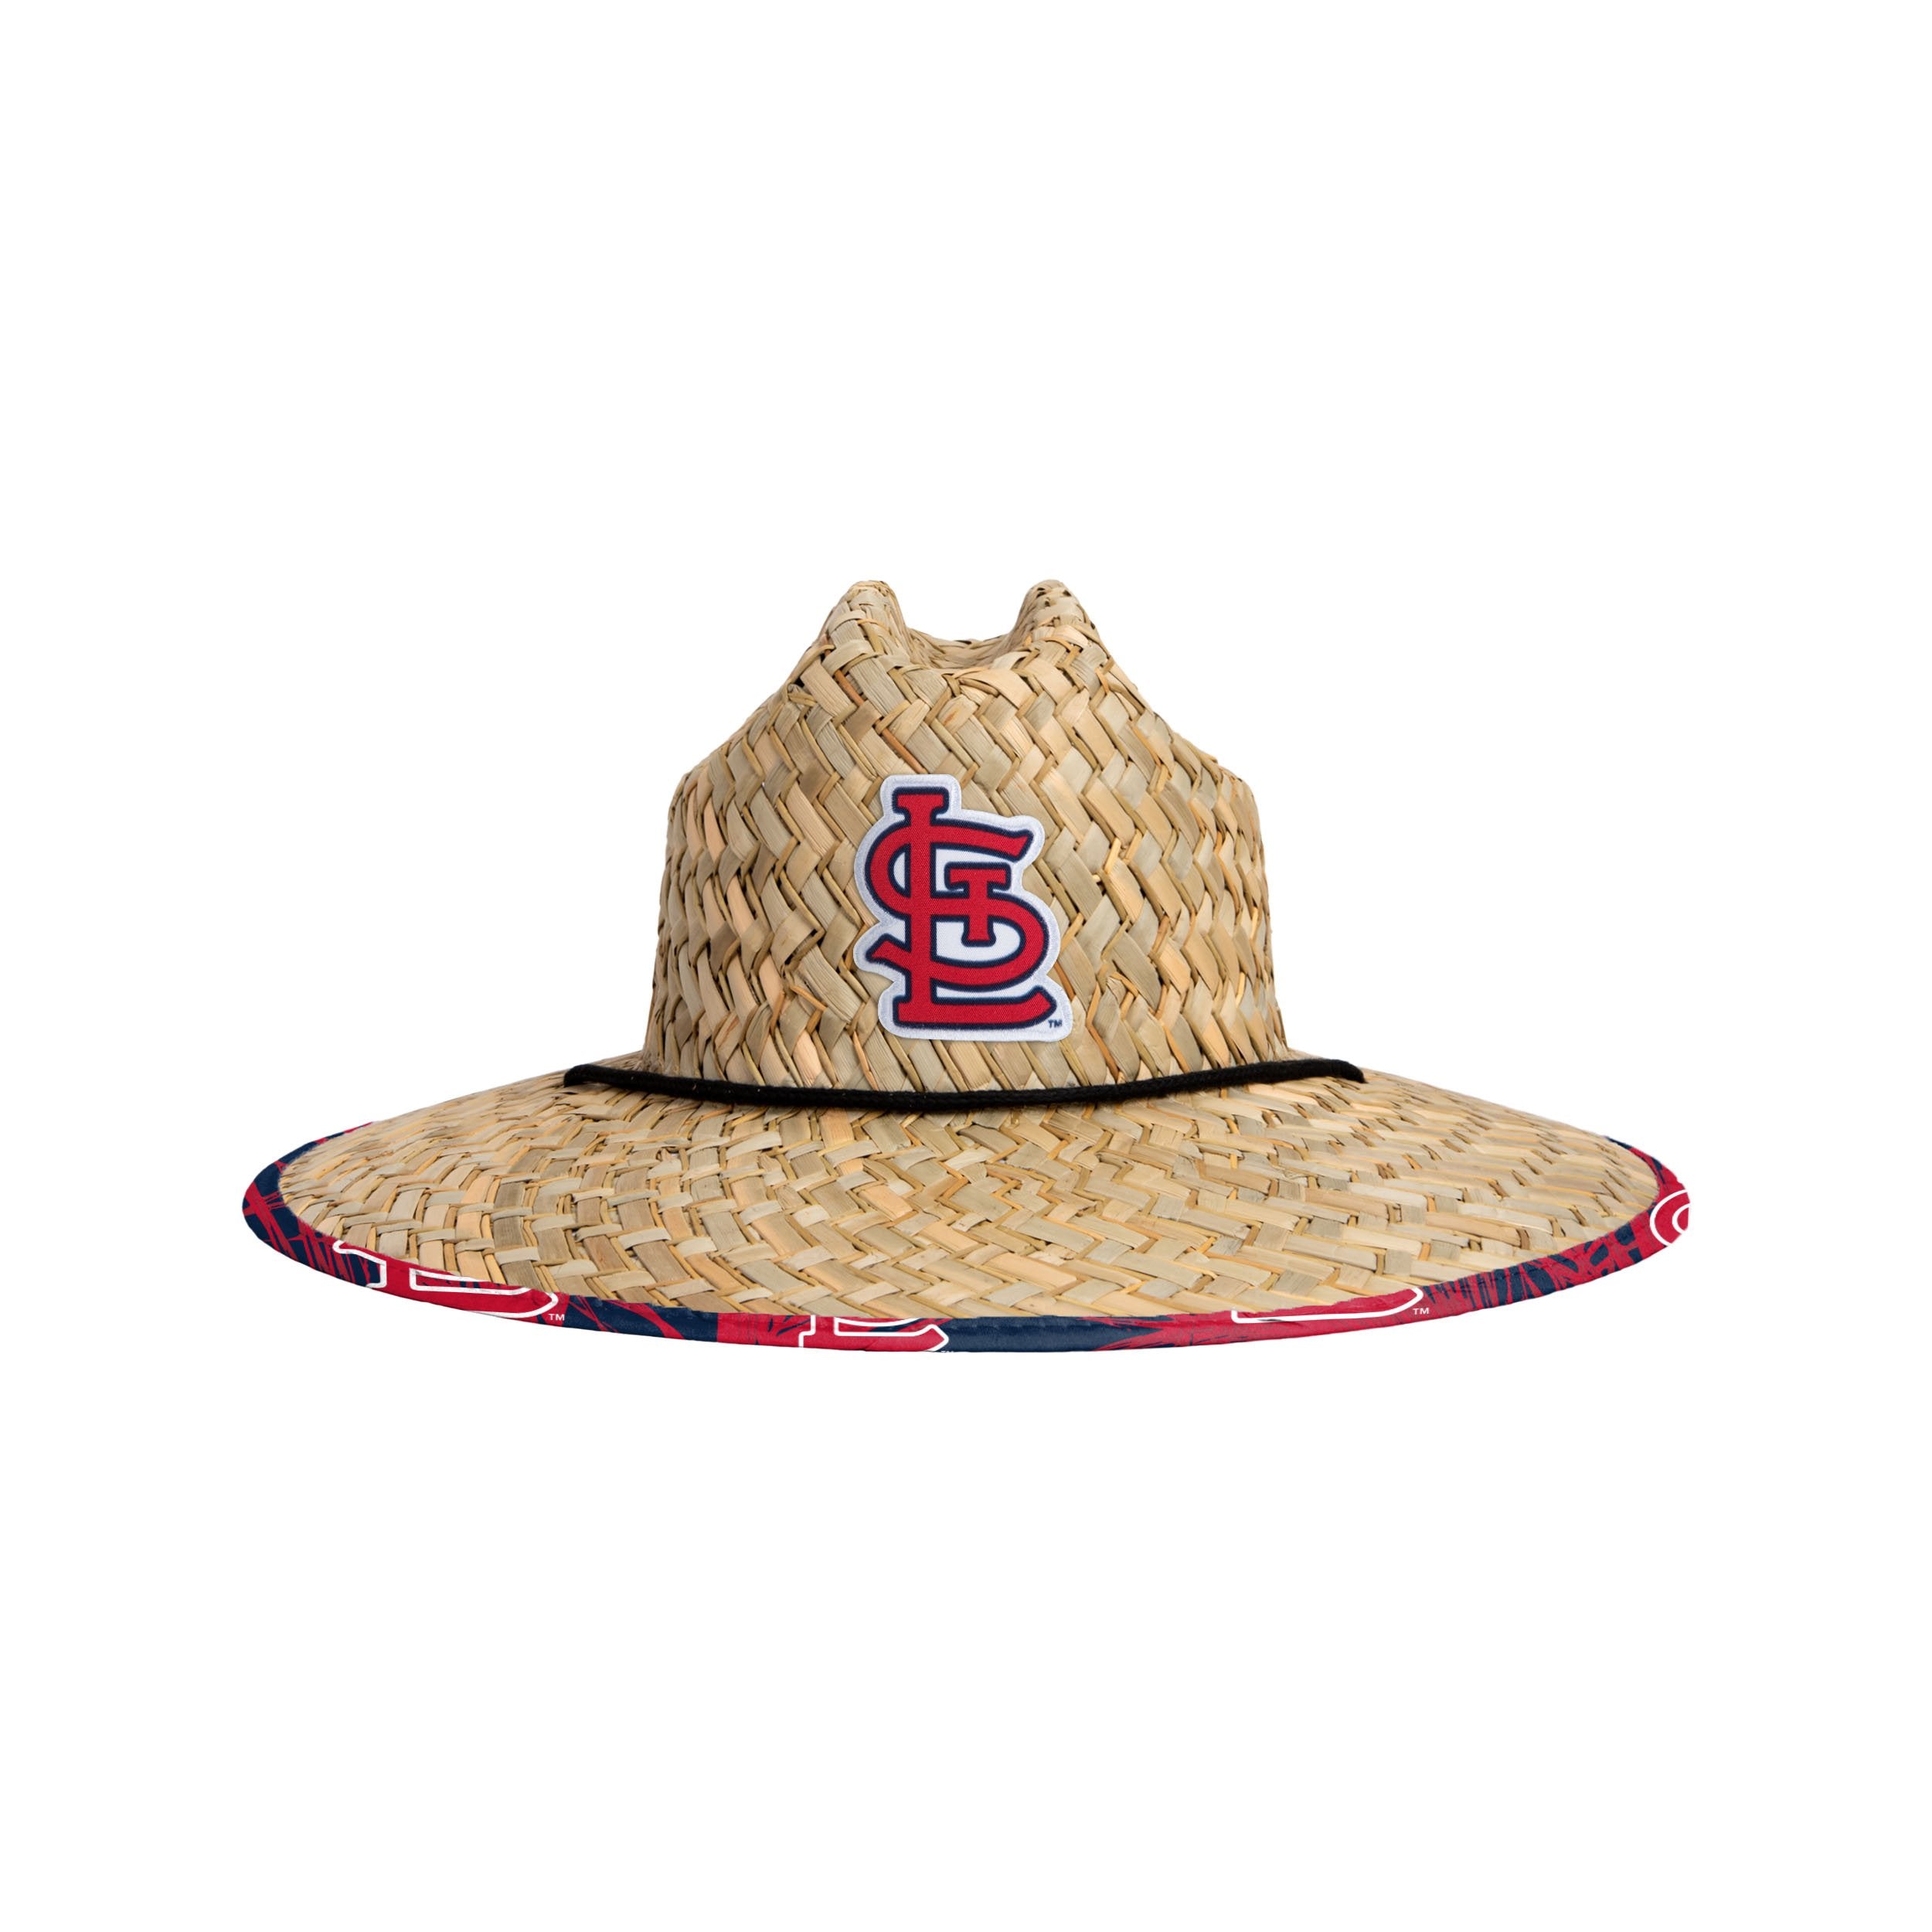 St. Louis Bucket Hat - Hatsline